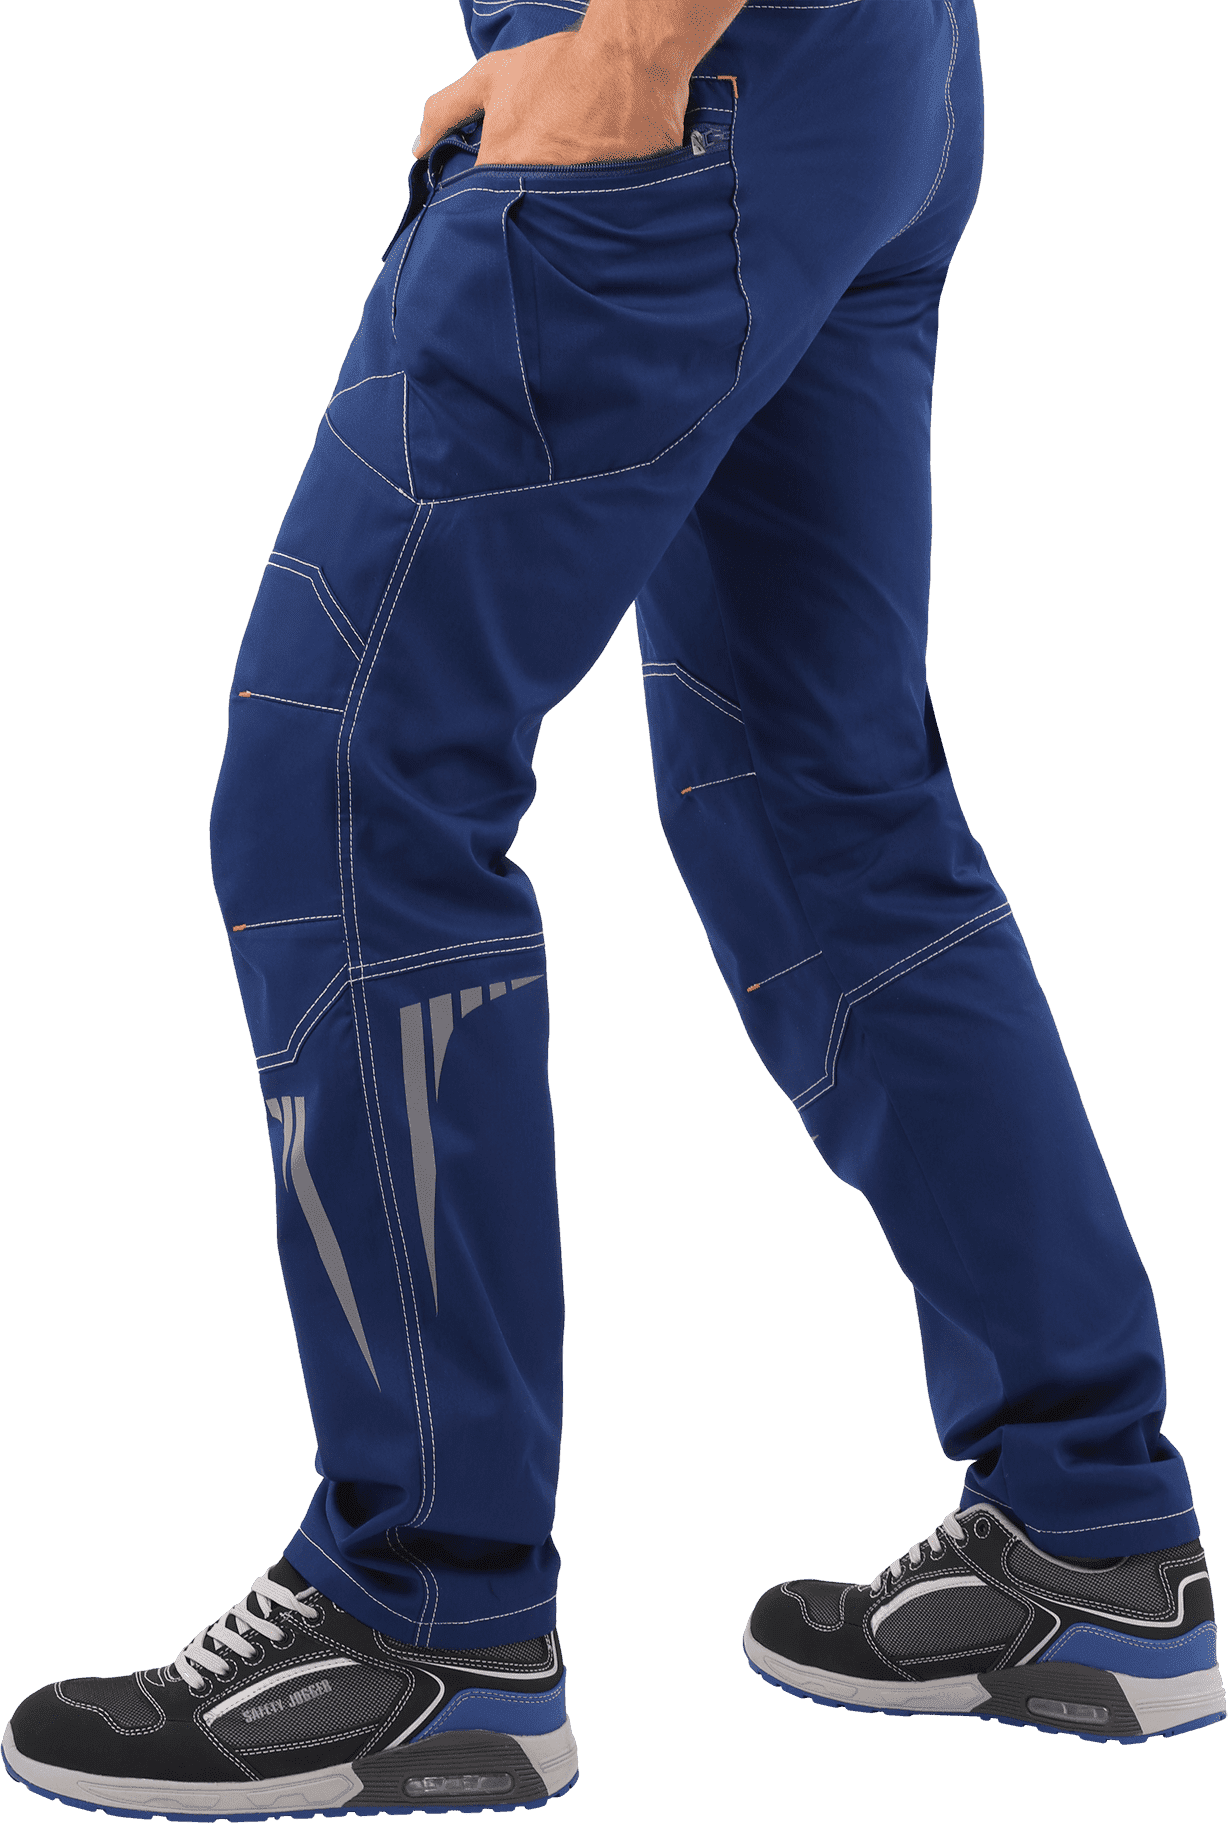 Летние брюки рабочие ПЕРФЕКТ синие мужские